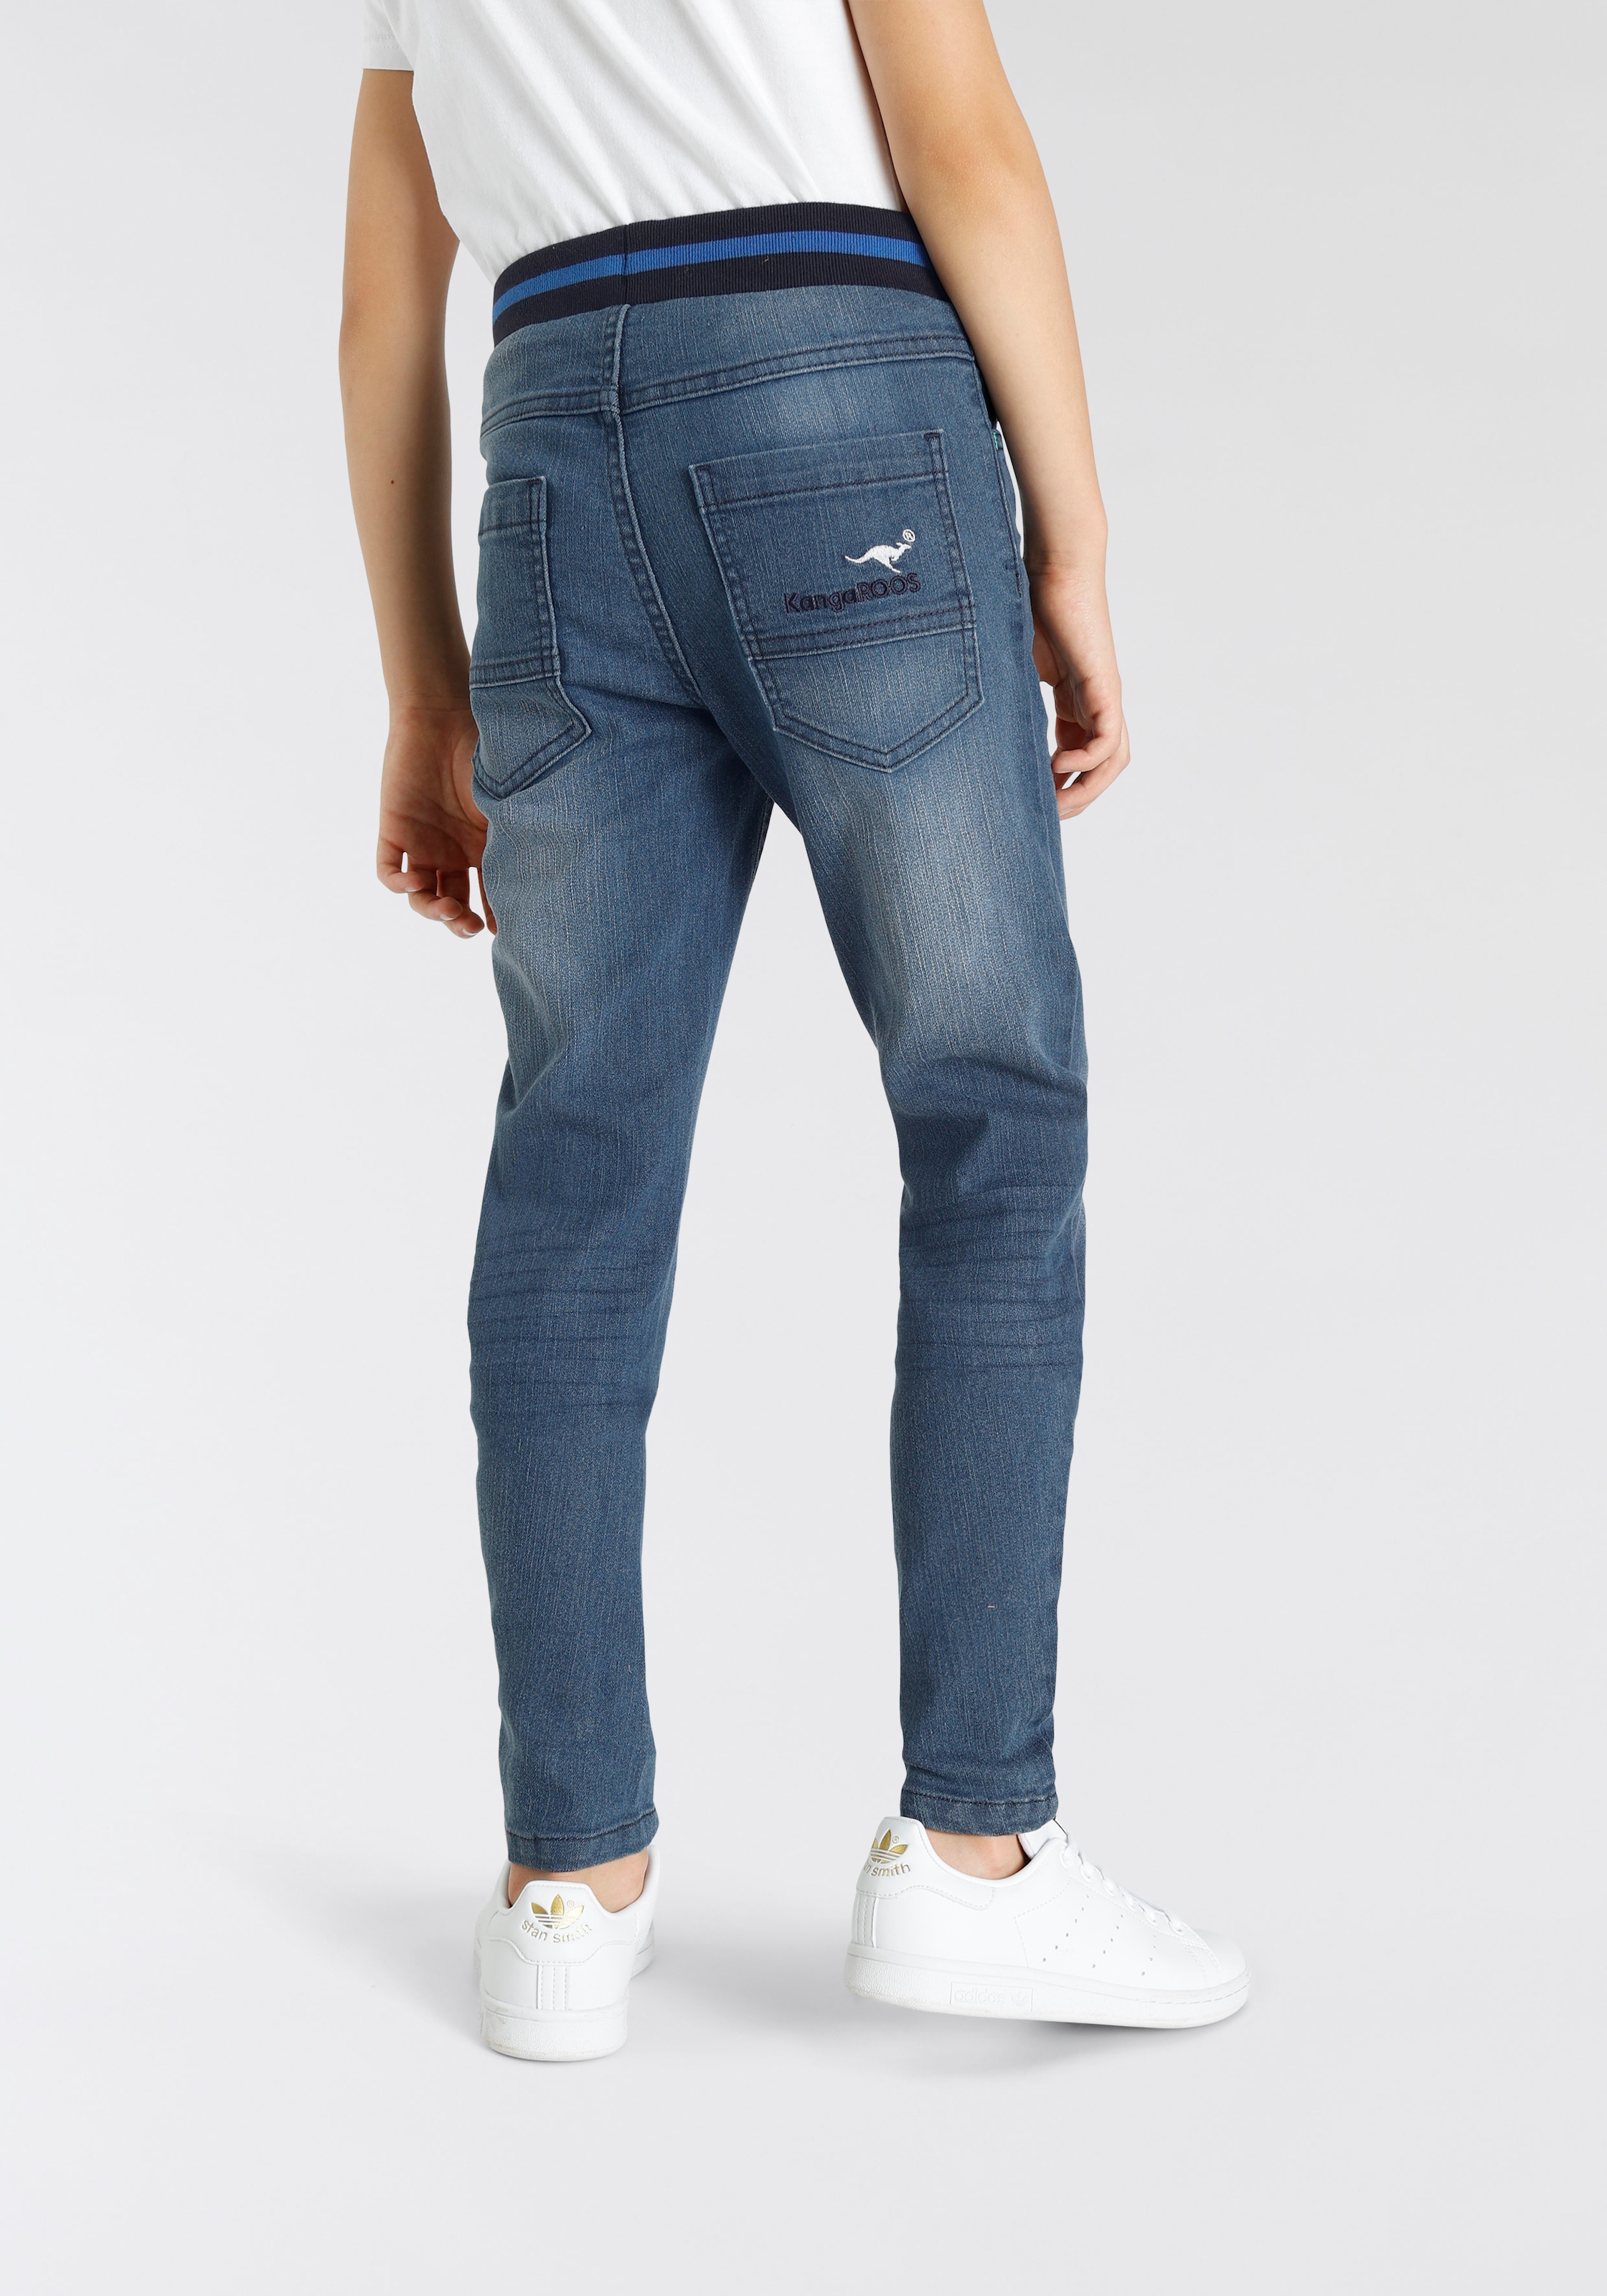 KangaROOS Stretch-Jeans »Denim«, in authentischer bei OTTO bestellen Waschung